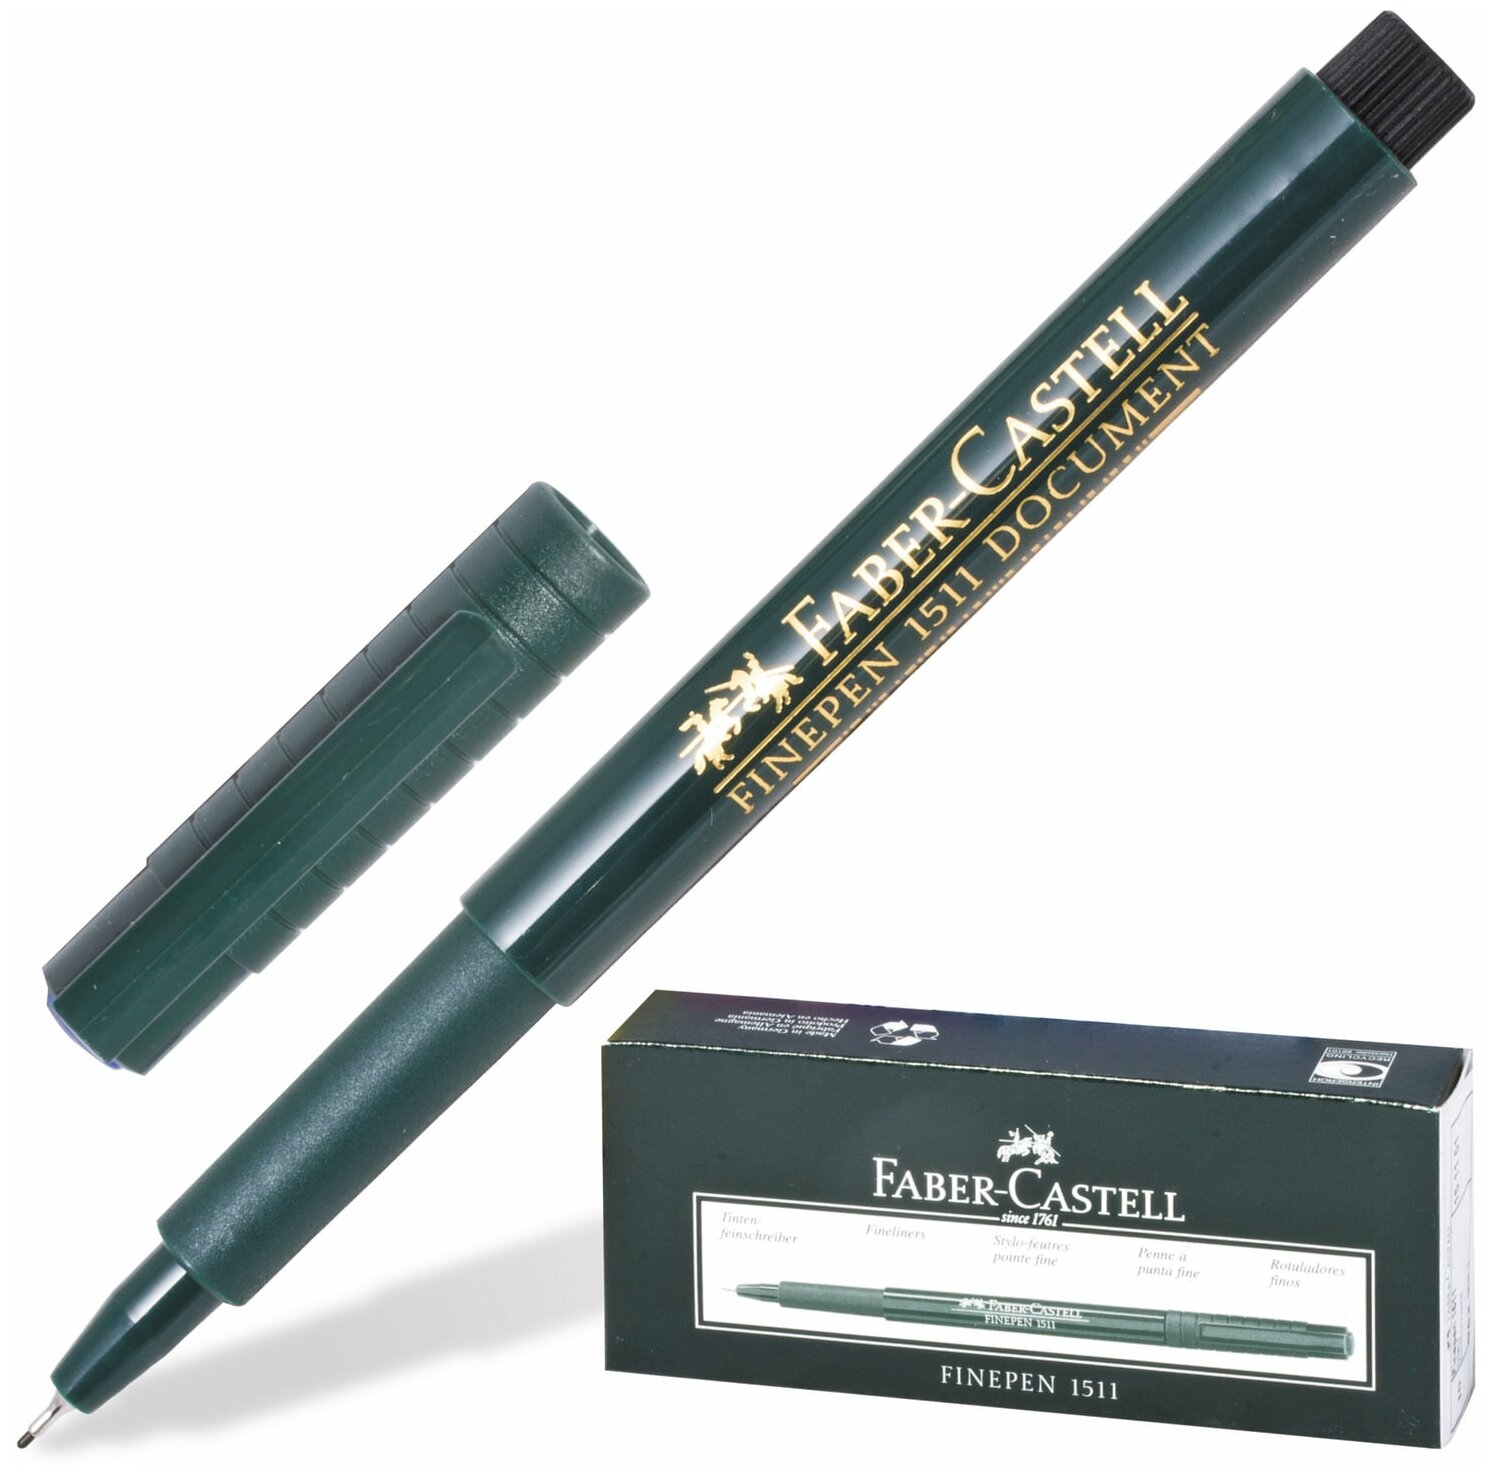 Ручка капиллярная (линер) FABER-CASTELL "Finepen 1511", черная, корпус темно-зеленый, линия 0,4 мм, 151199 - 1 шт.